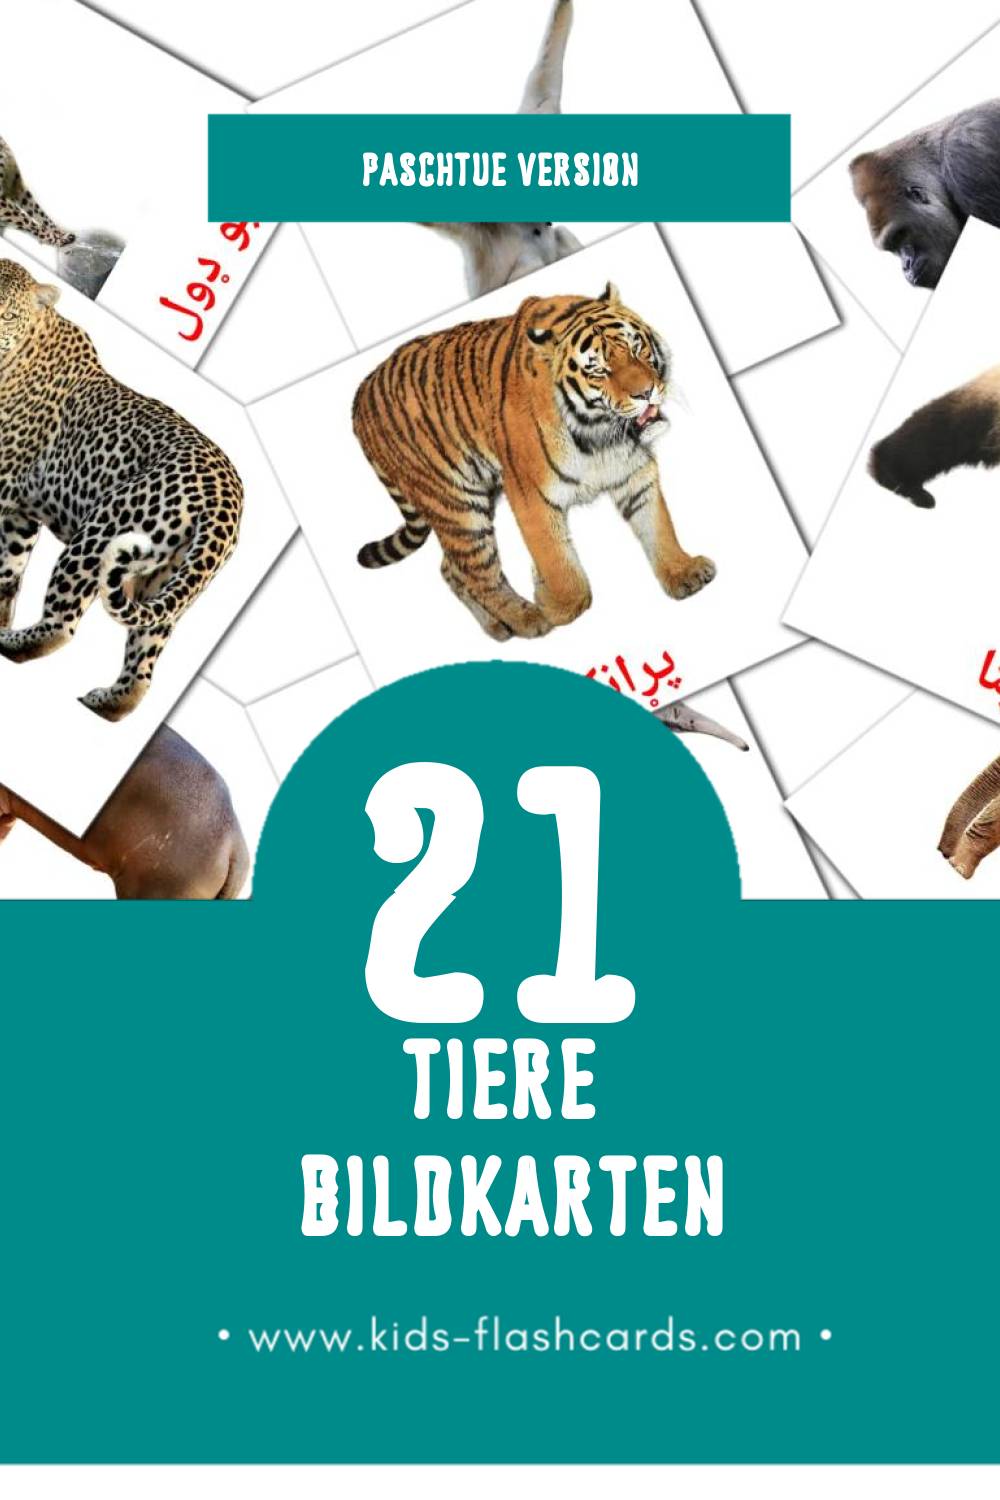 Visual ځناور Flashcards für Kleinkinder (21 Karten in Paschtu)